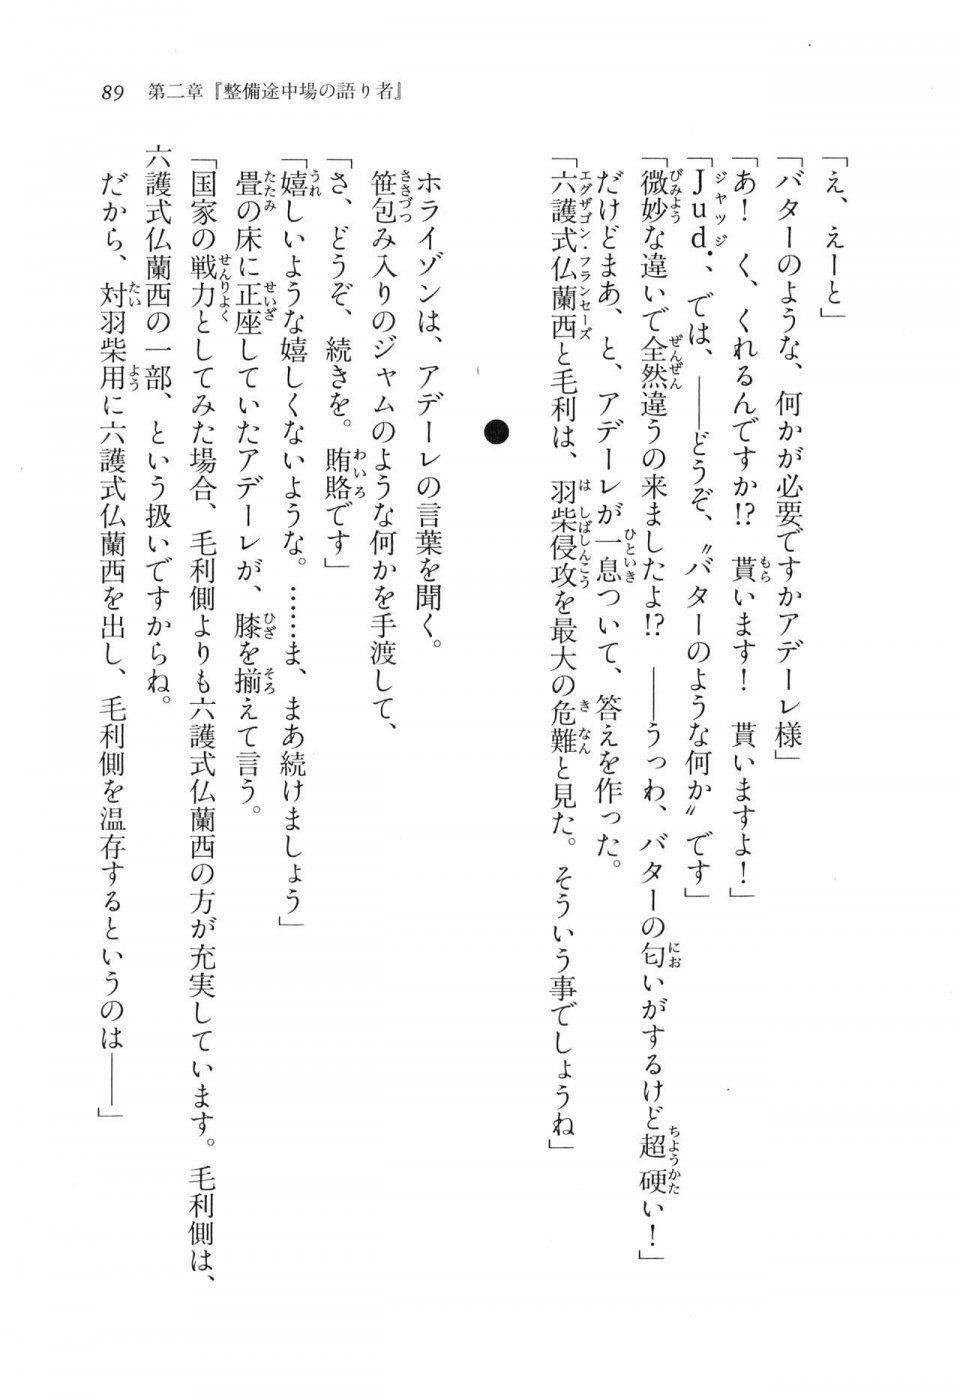 Kyoukai Senjou no Horizon LN Vol 11(5A) - Photo #89